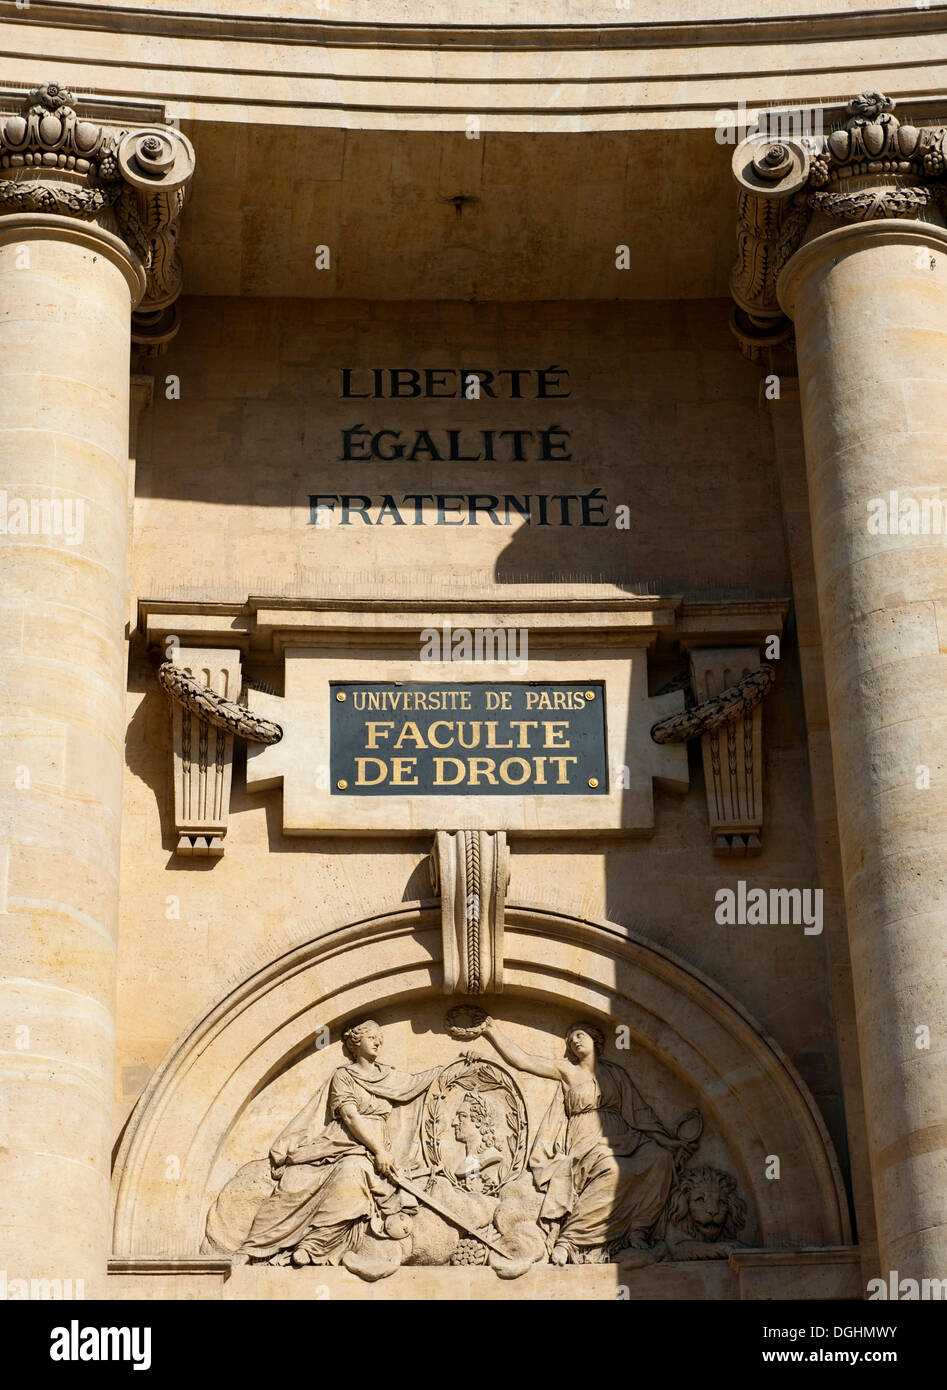 University of Paris, Faculty of Law, Place du Panthéon, inscription Liberté, Egalité, Fraternité, freedom, equality Stock Photo